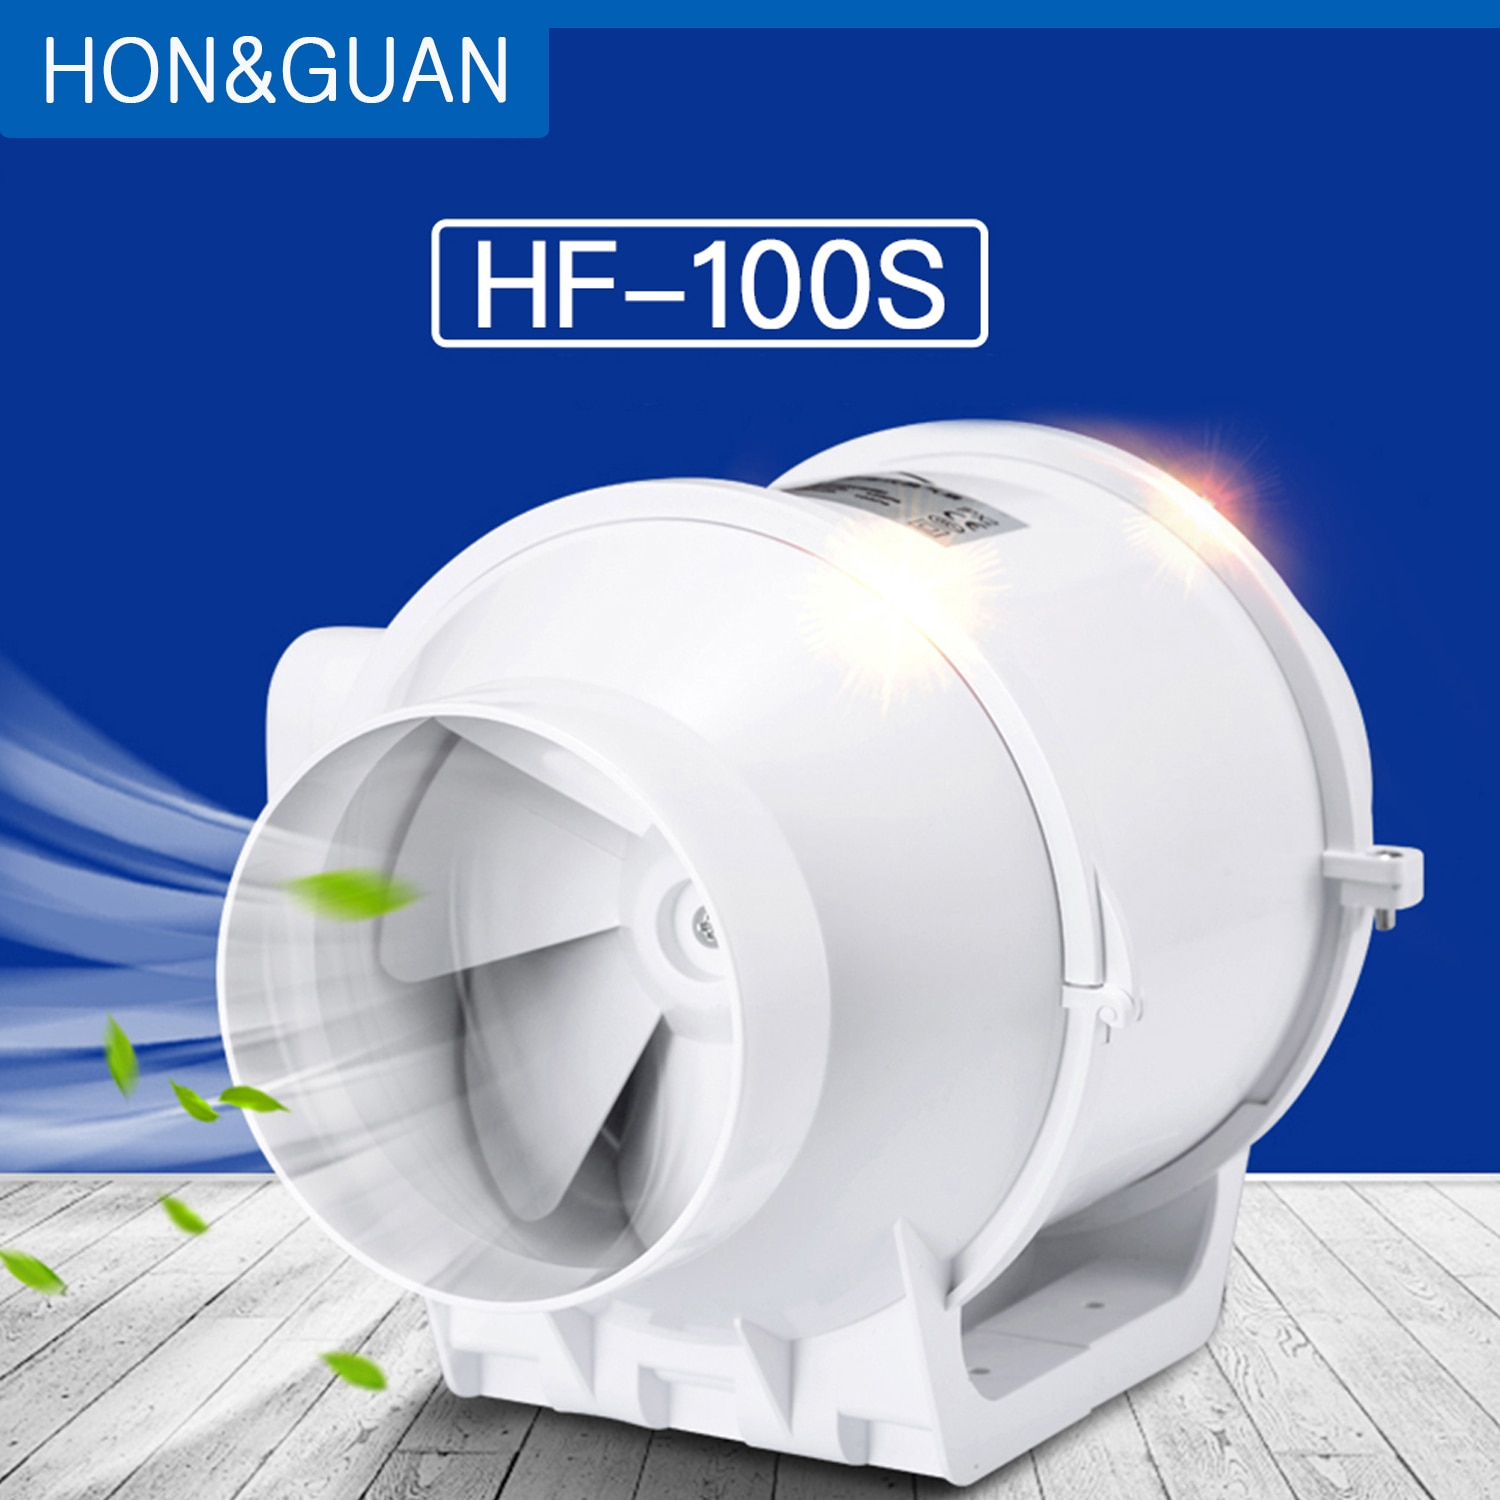 Us 4349 42 Offhonguan 4 Inline Duct Fan Booster Fan Plastic Waterproof Ventilation Pipe Exhaust Ceiling Bathroom Extractor Fan Hf 100sfans for size 1500 X 1500